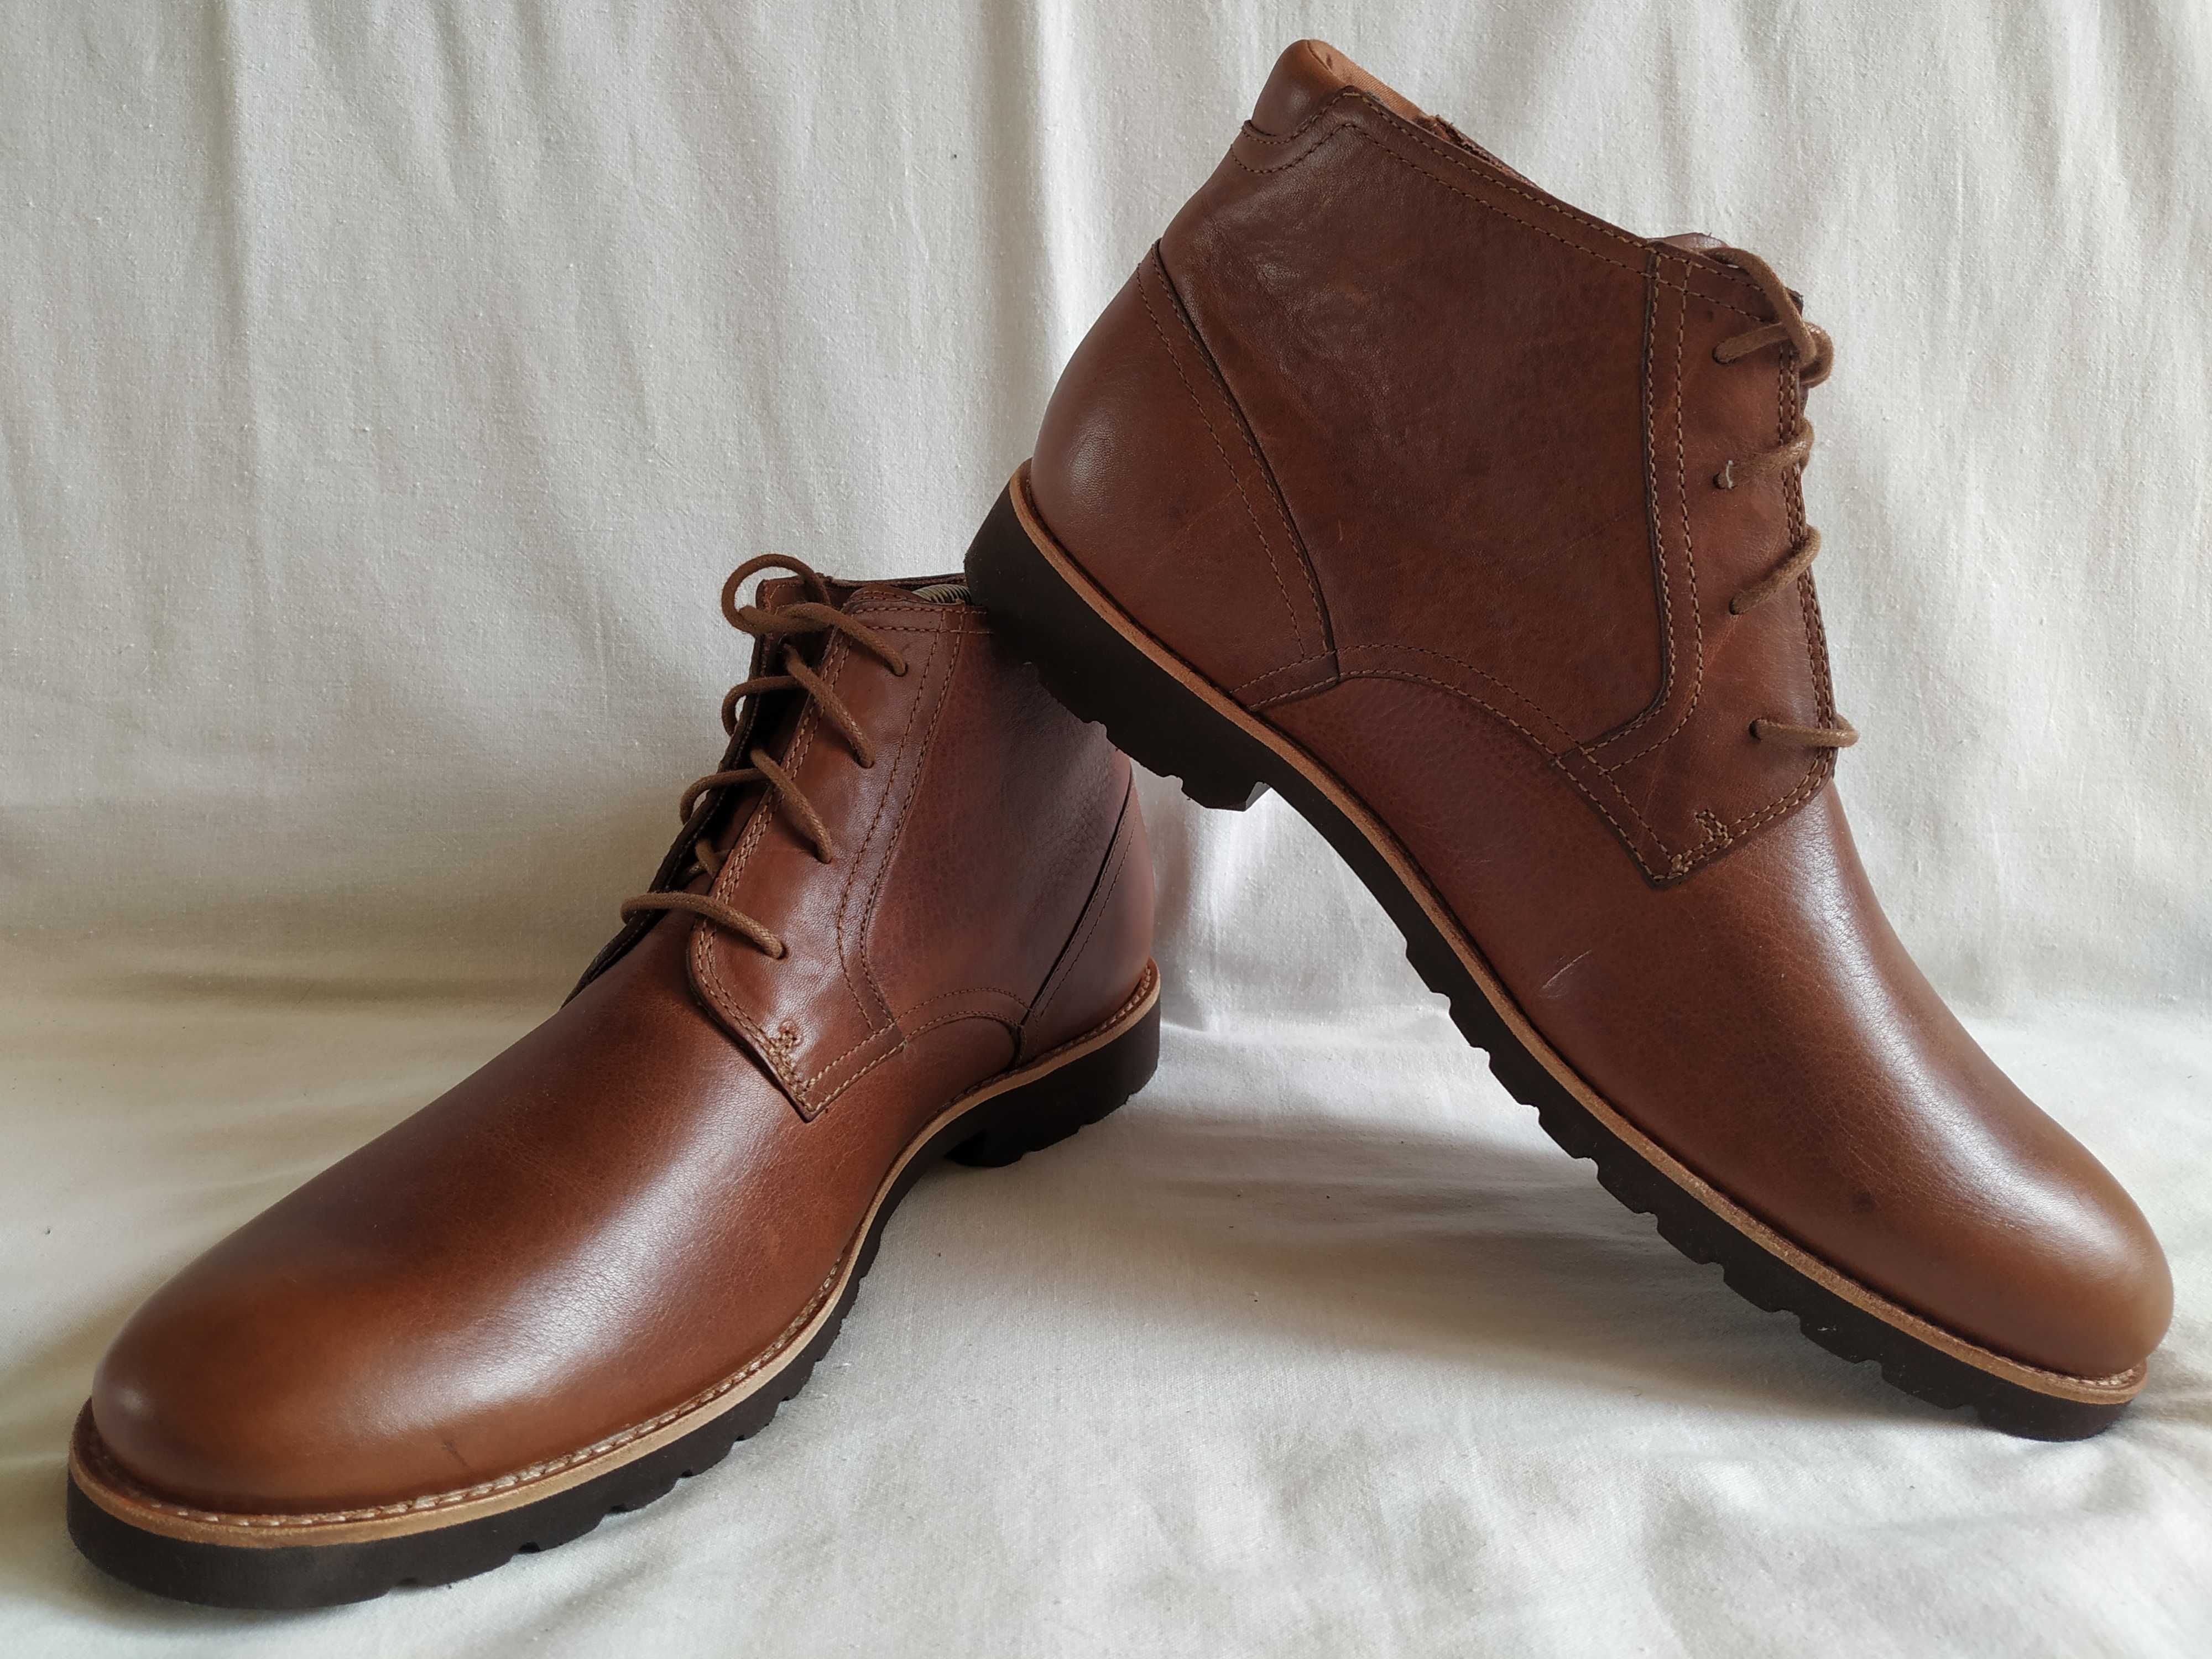 Ботинки кожаные мужские "Rockport" Размер EUR-44.5 (29-29,5 см). Новые